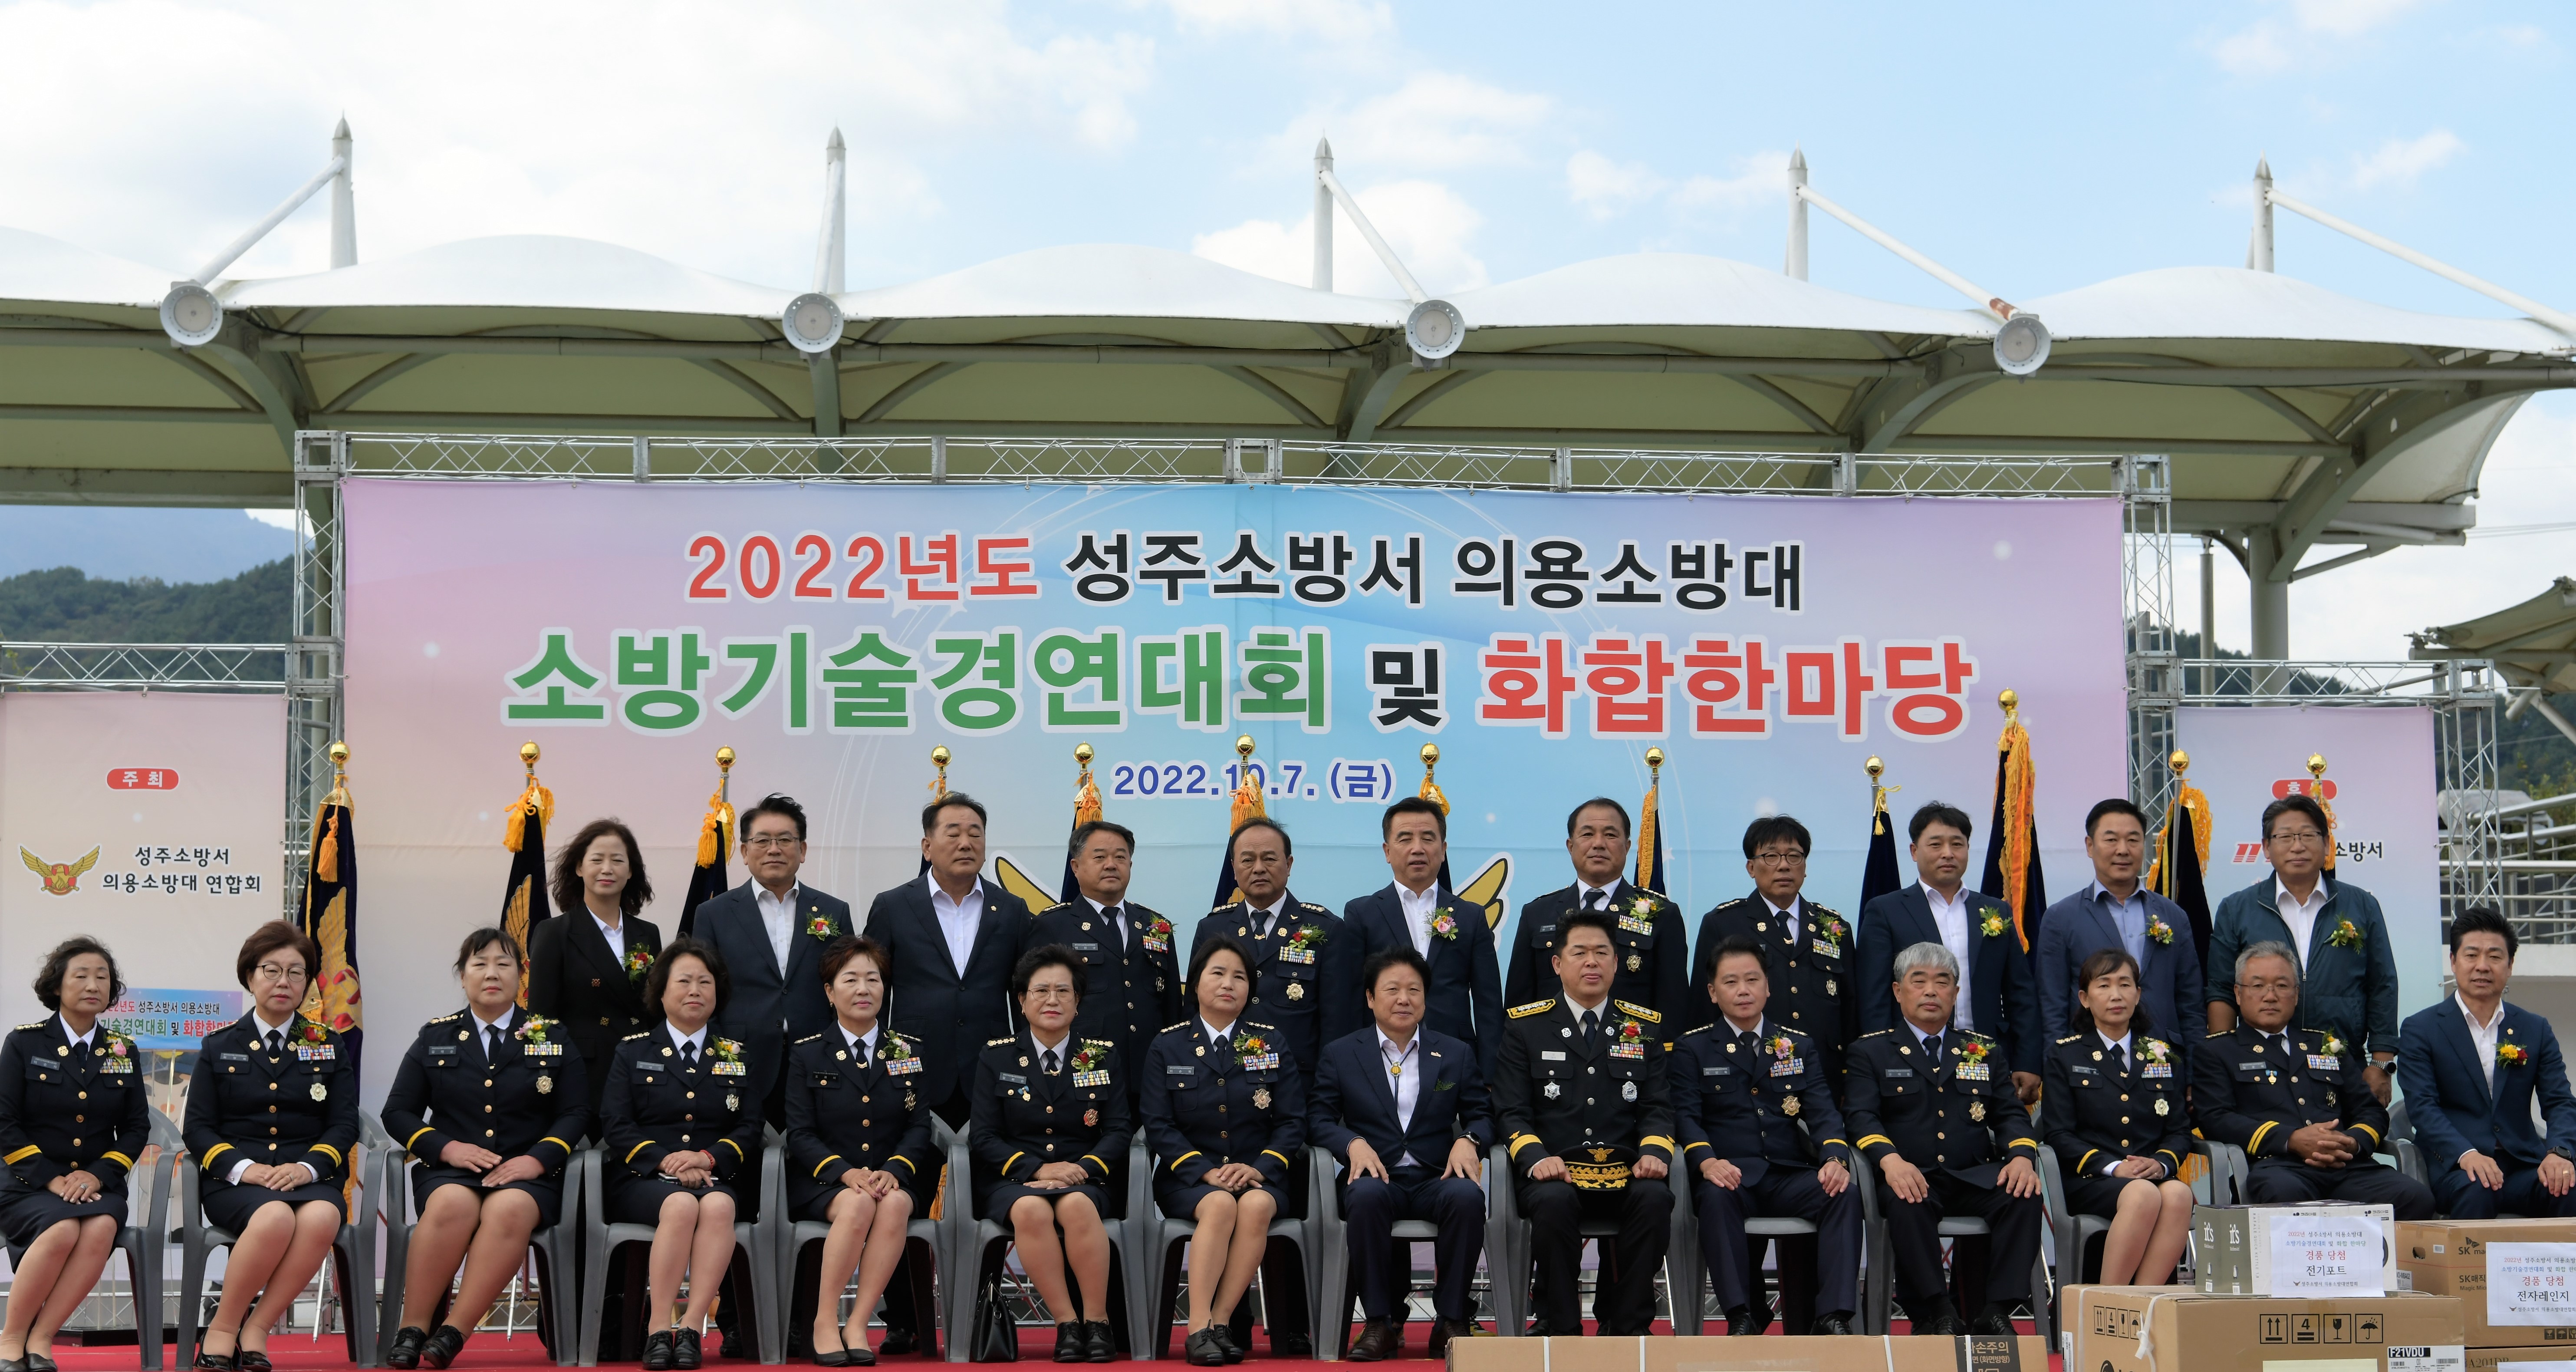 보도자료(2022.10.7.) 성주소방서, 의용소방대 소방기술경연대회 개최(1).jpg